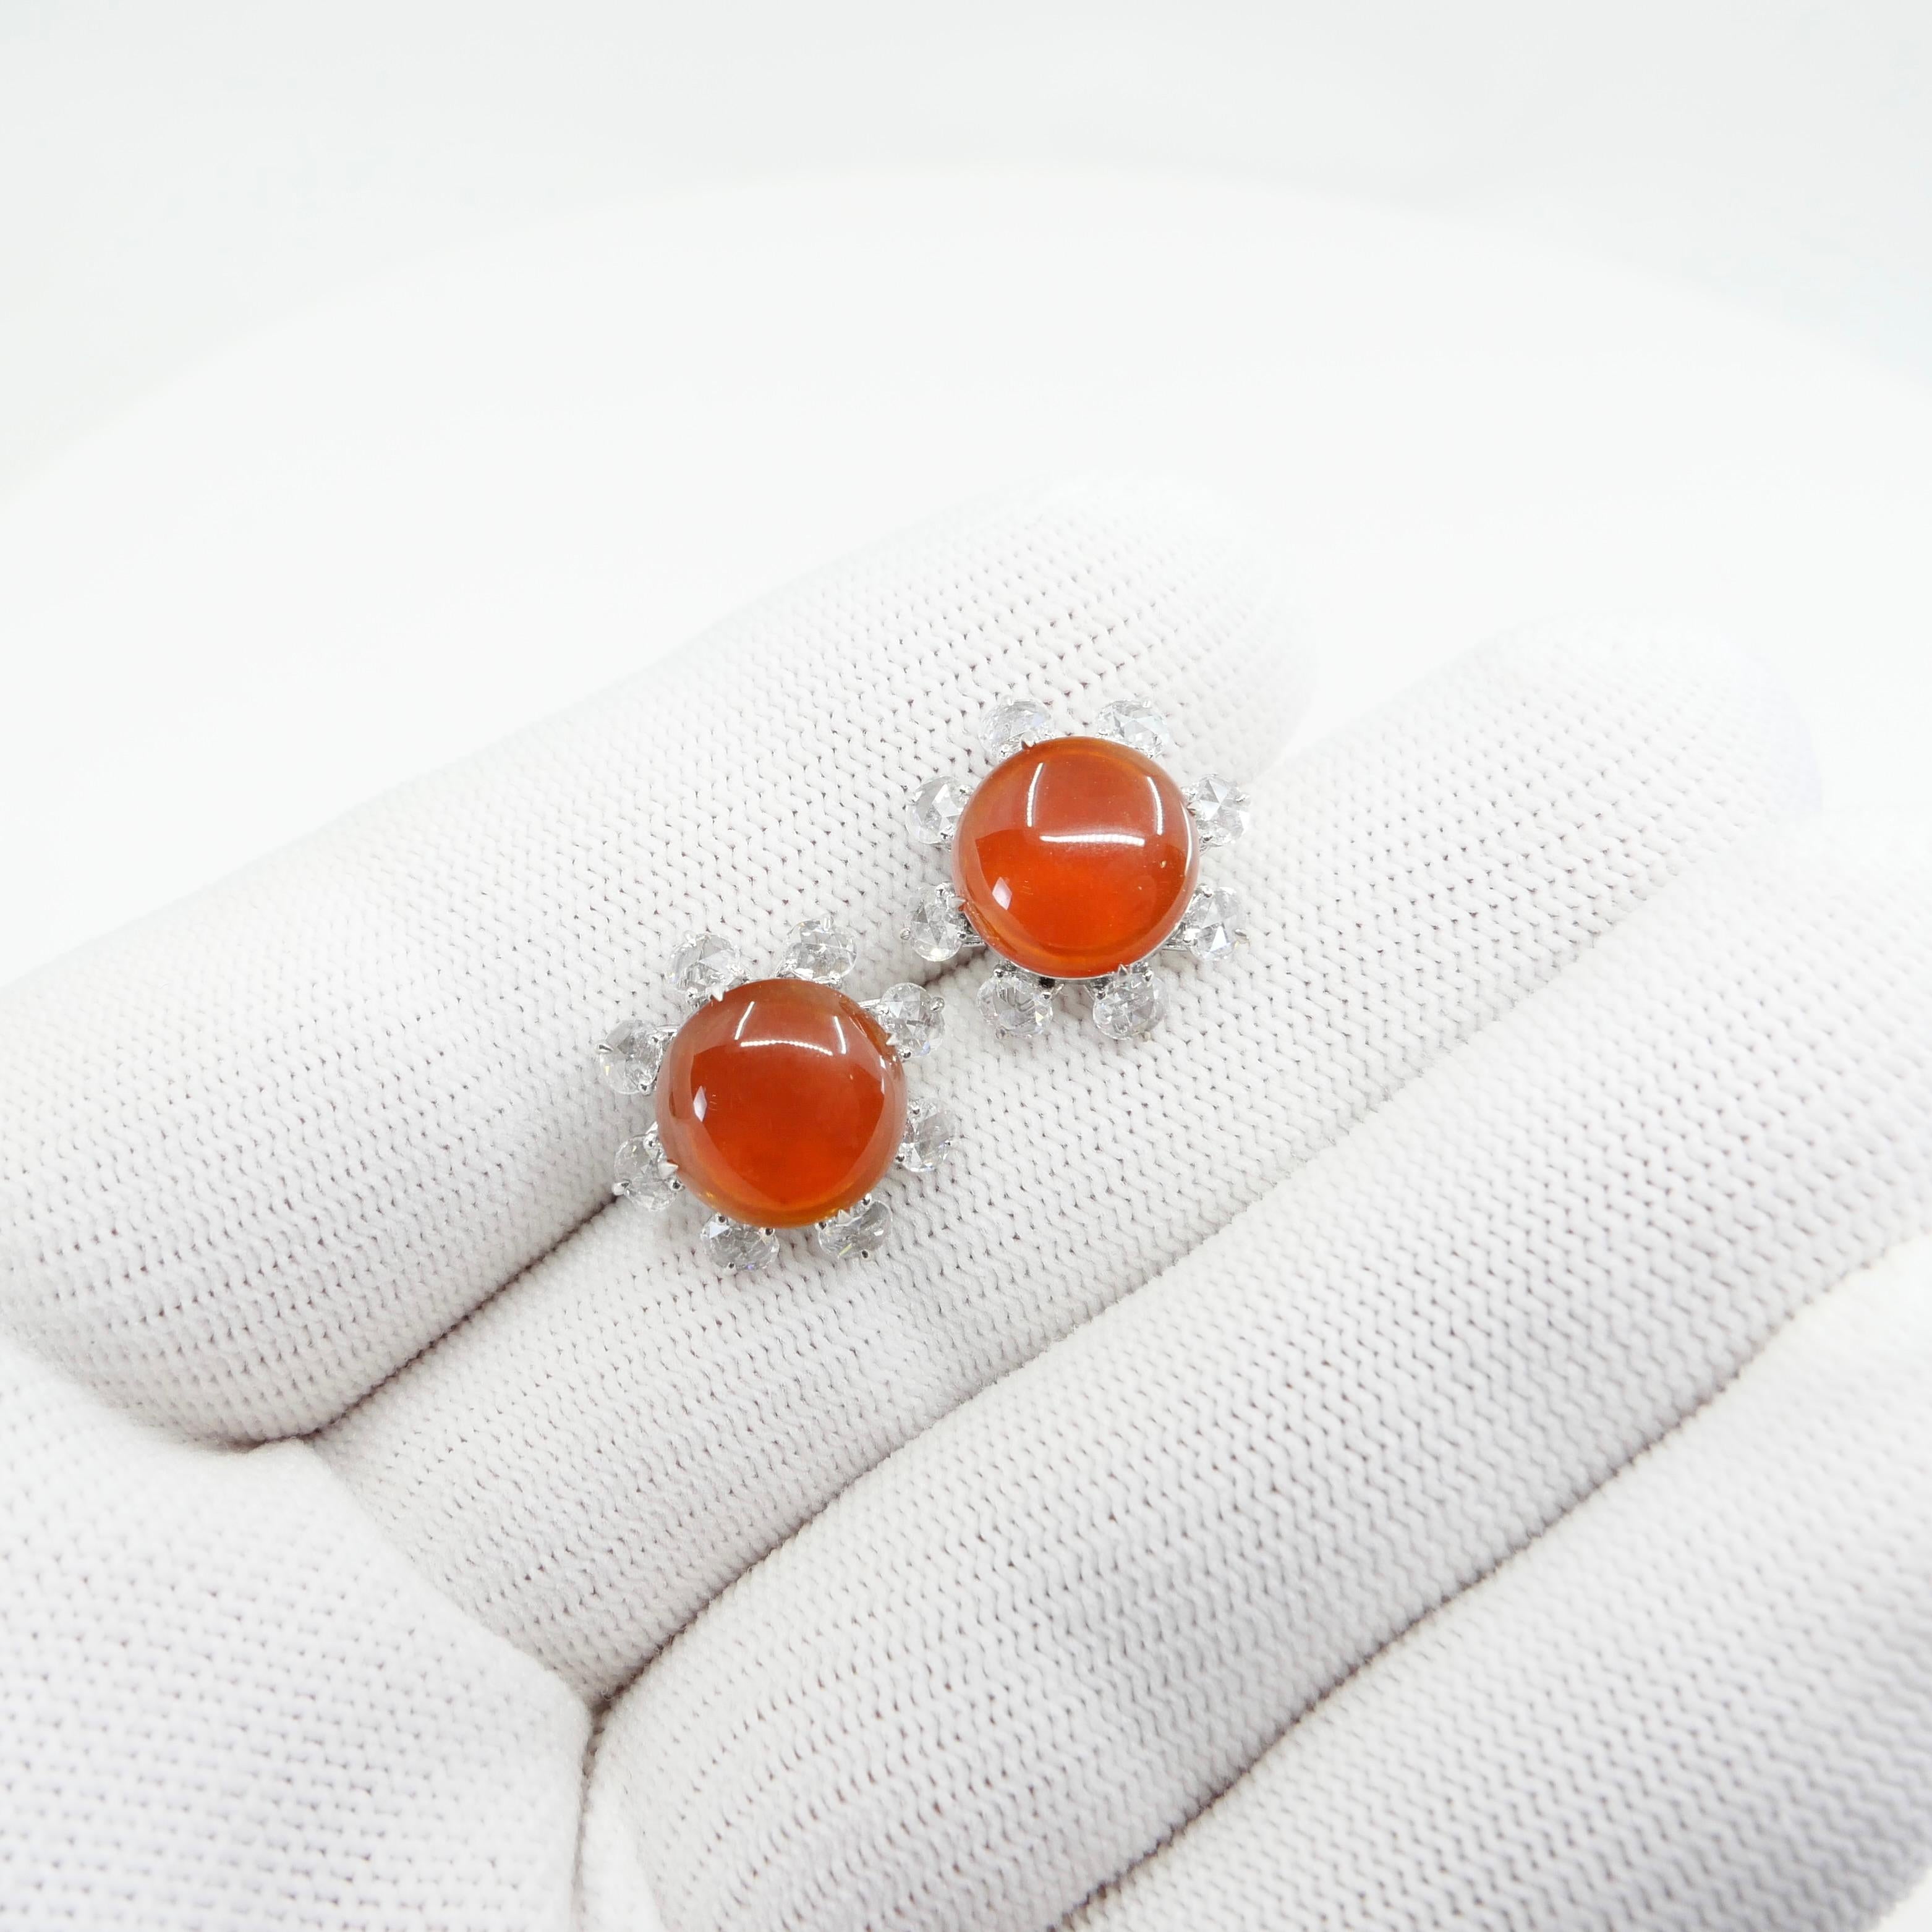 red jade earrings